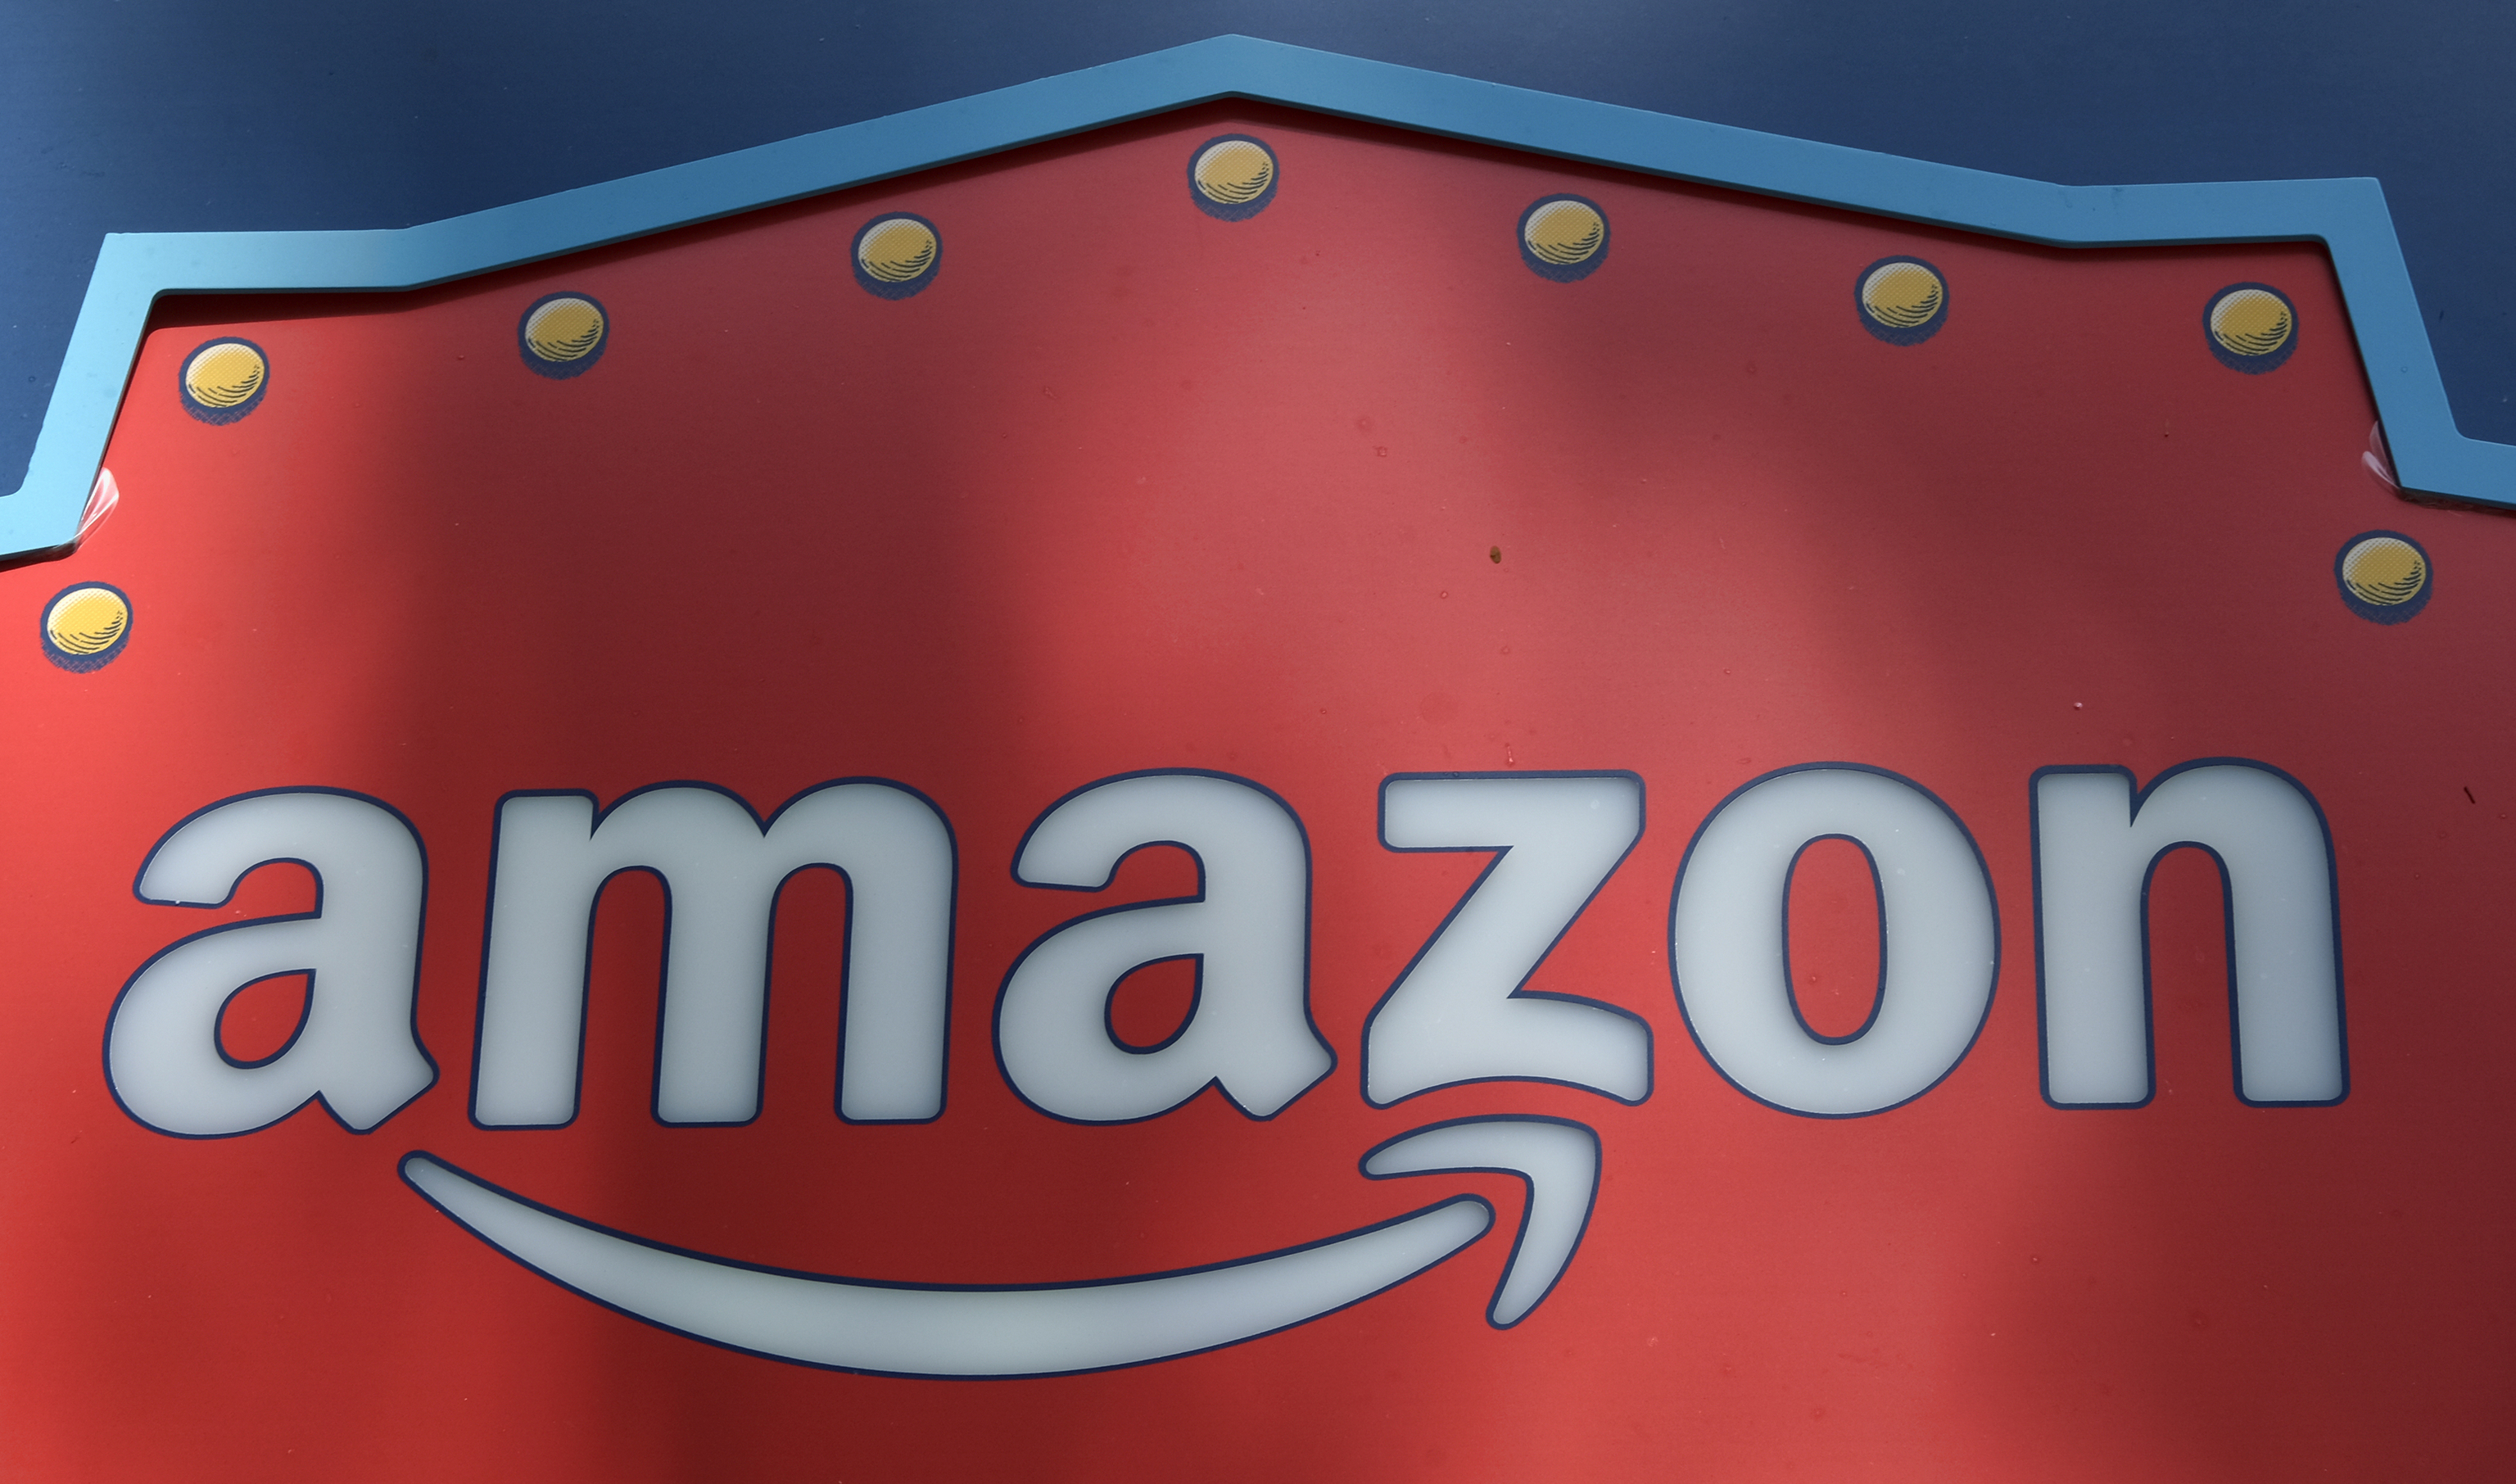 El Prime Day de Amazon vuelve: 12 y 13 de julio con ofertas en todo el mundo